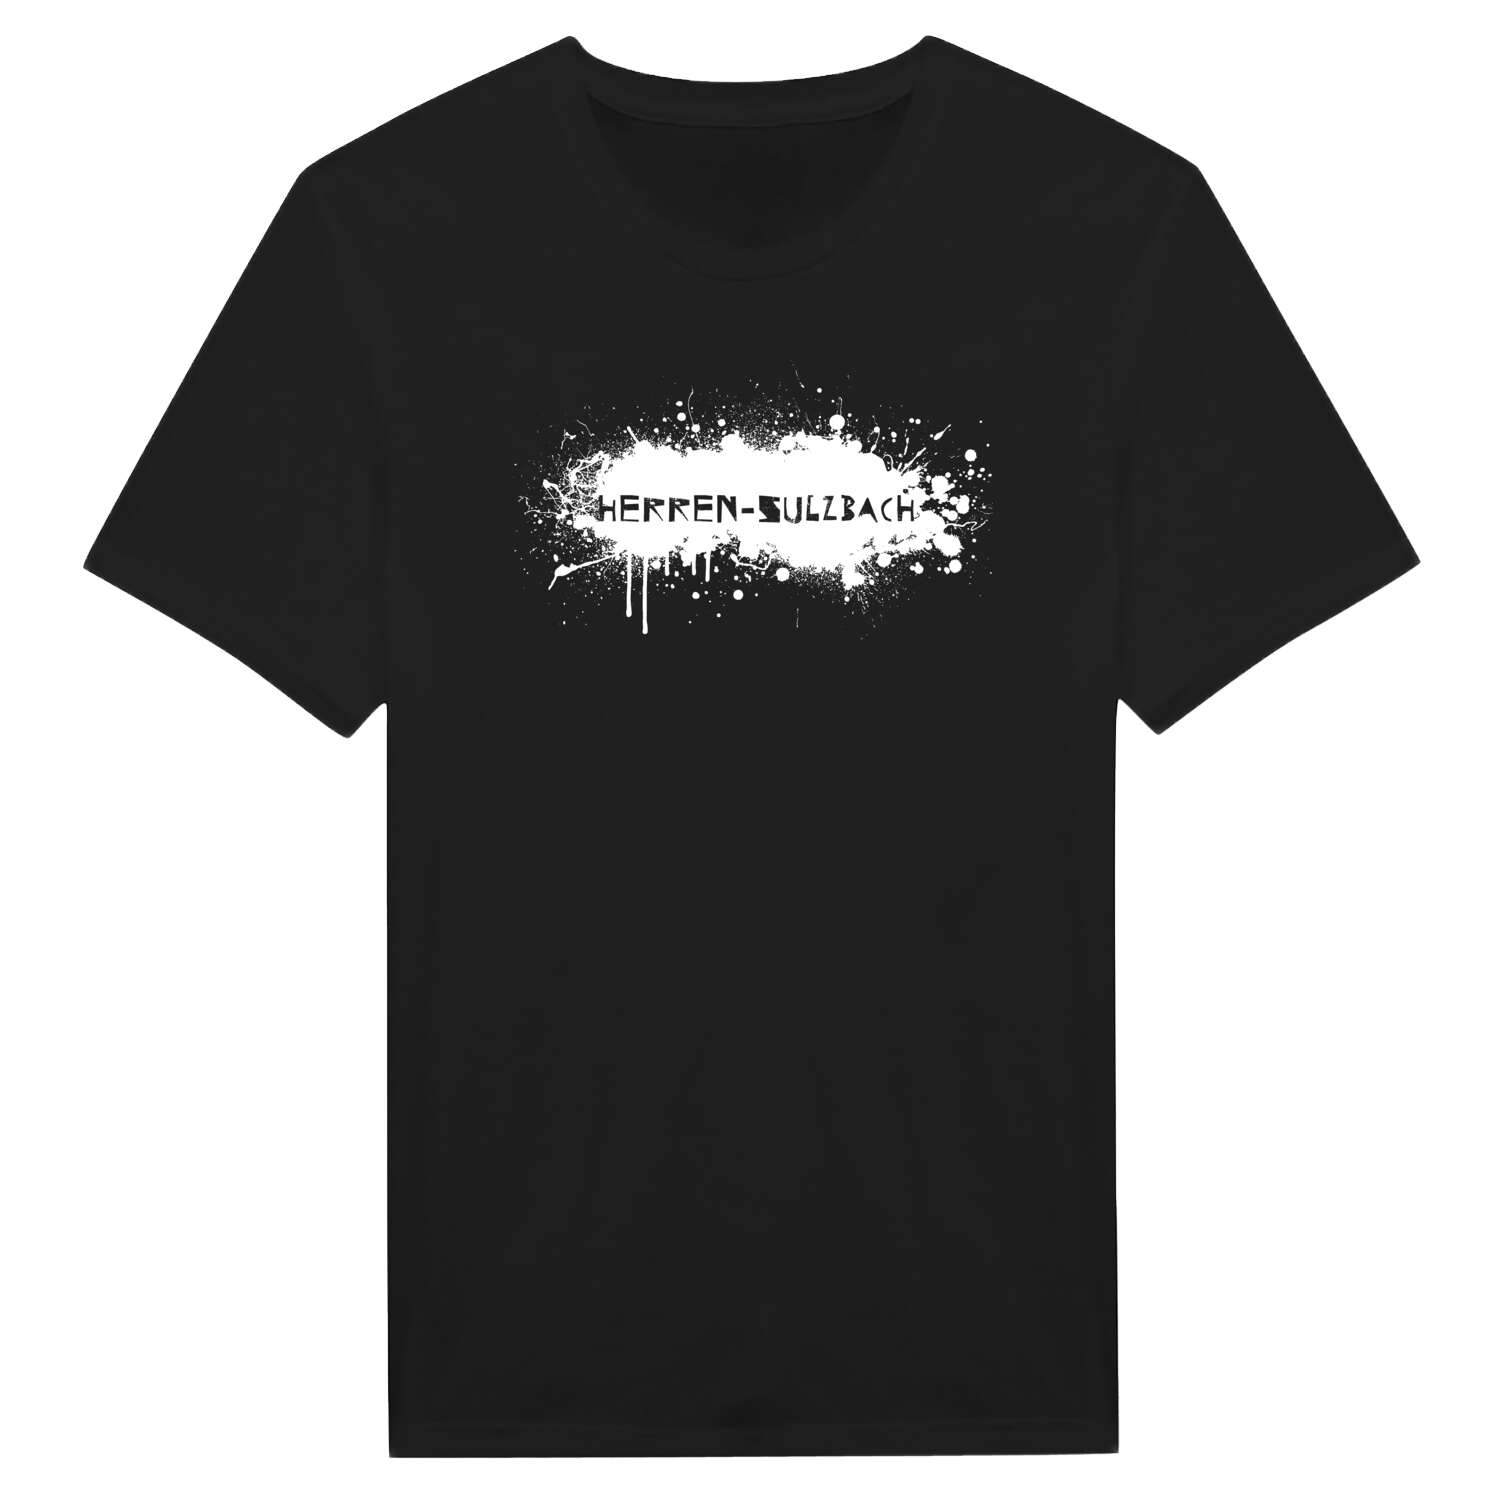 Herren-Sulzbach T-Shirt »Paint Splash Punk«